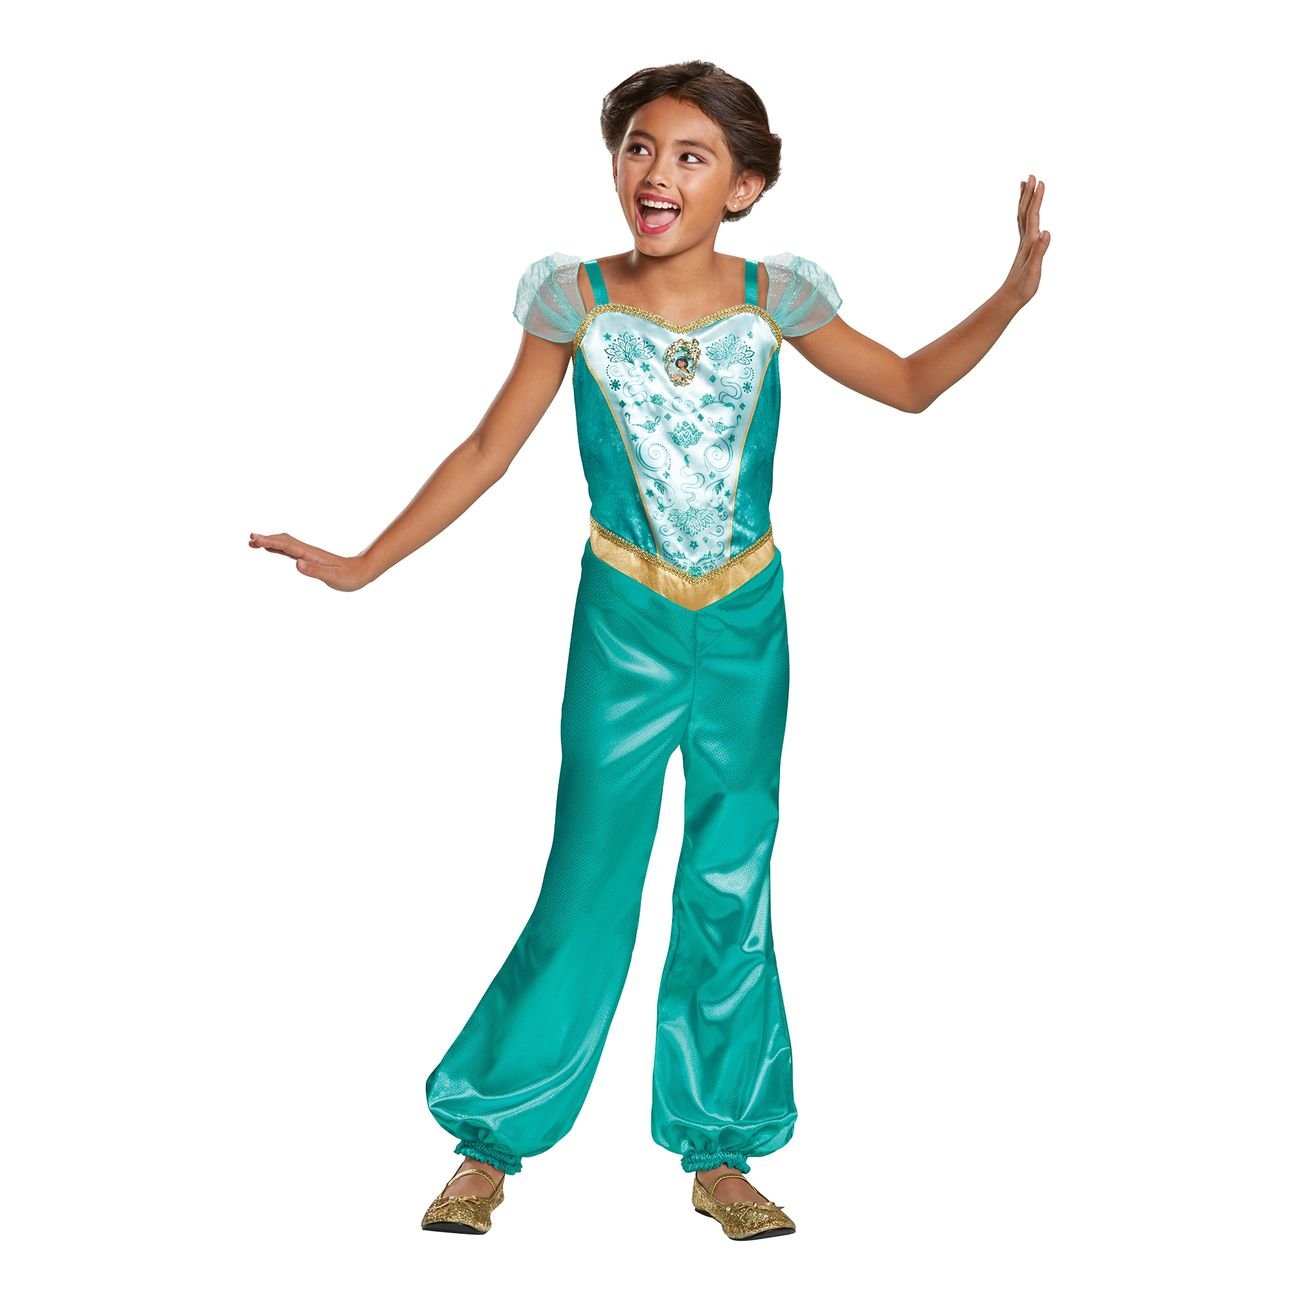 Disney Jasmin kostume til børn - Disney prinsesse kostume til børn